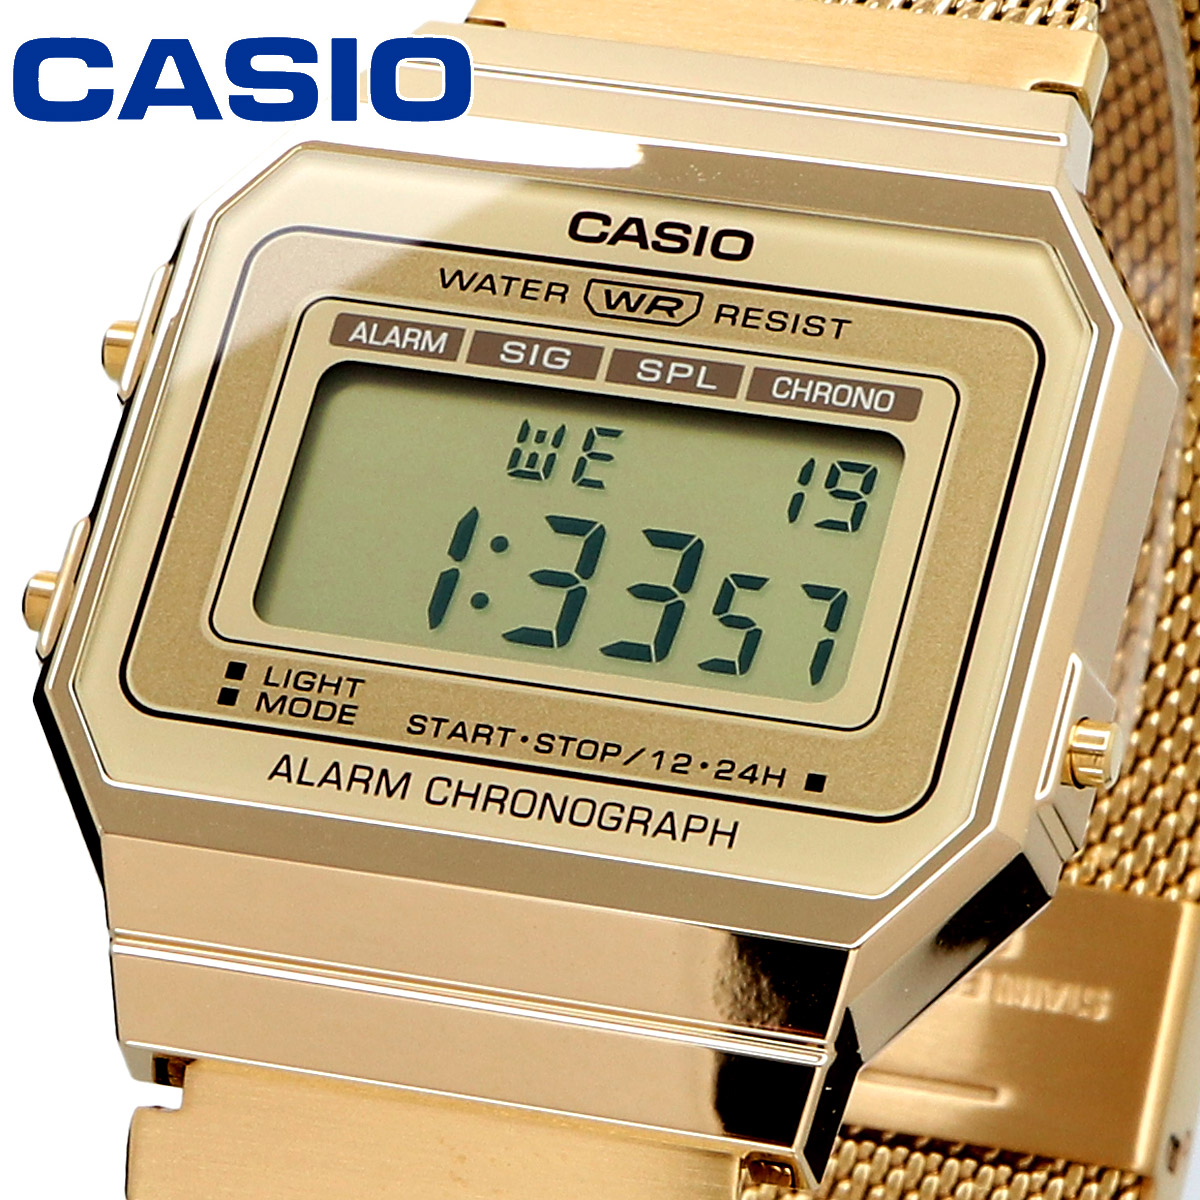 CASIO カシオ 腕時計 メンズ レディース チープカシオ チプカシ 海外モデル デジタル A700WMG-9A